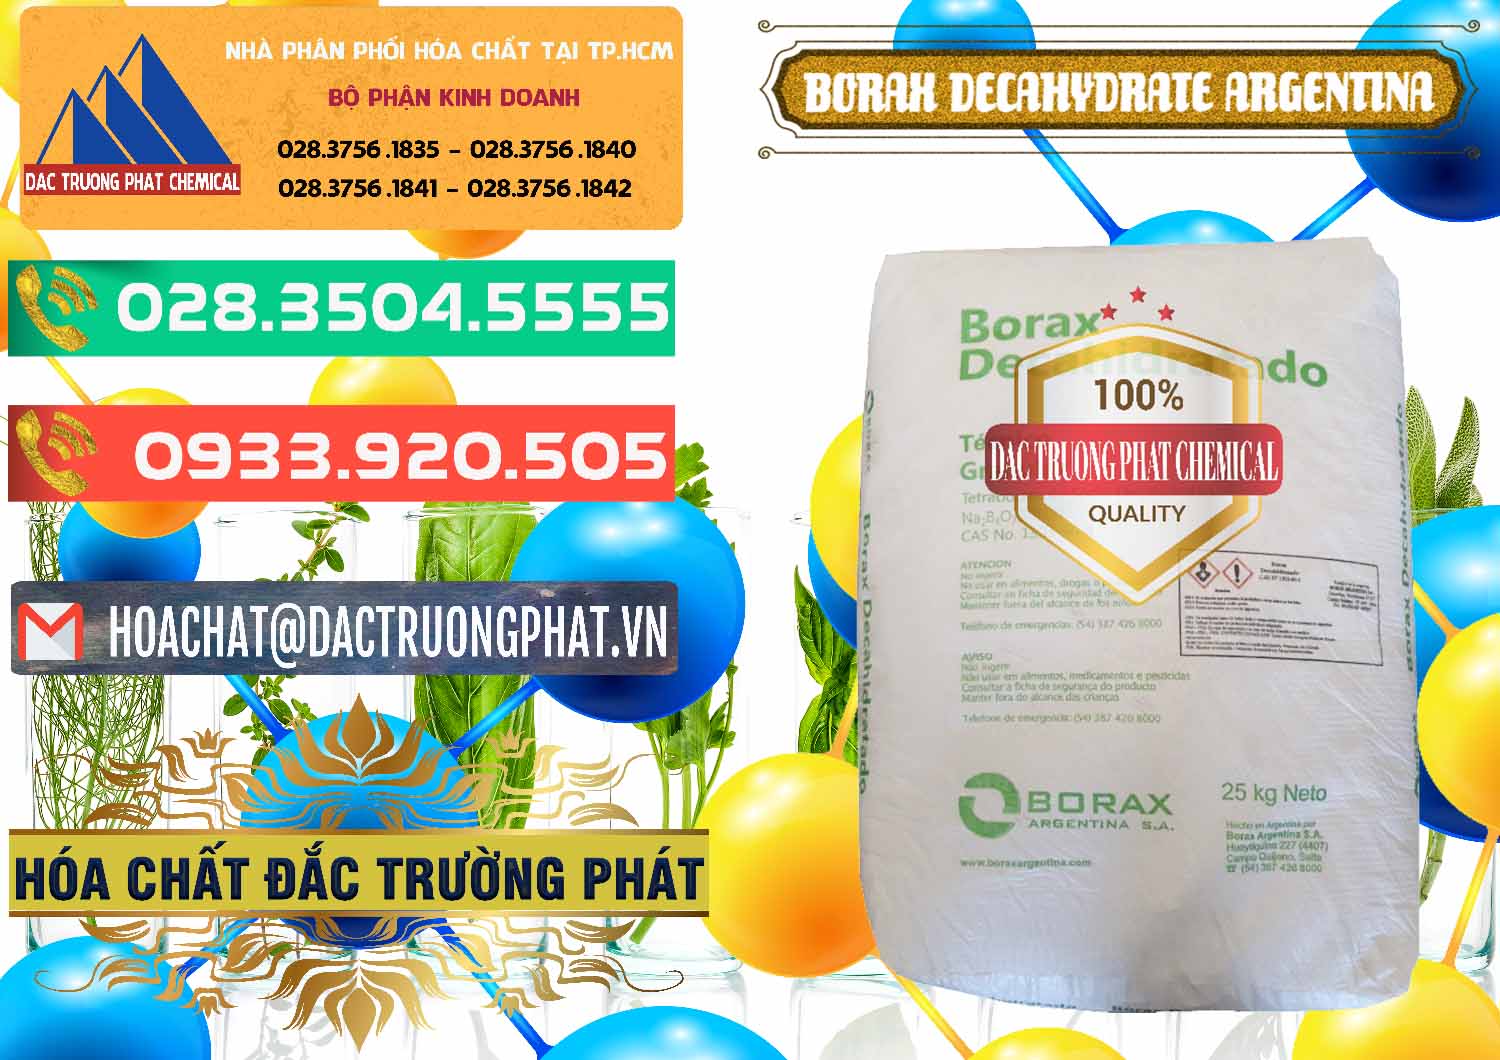 Công ty phân phối và bán Borax Decahydrate Argentina - 0446 - Cty chuyên cung ứng & phân phối hóa chất tại TP.HCM - congtyhoachat.com.vn